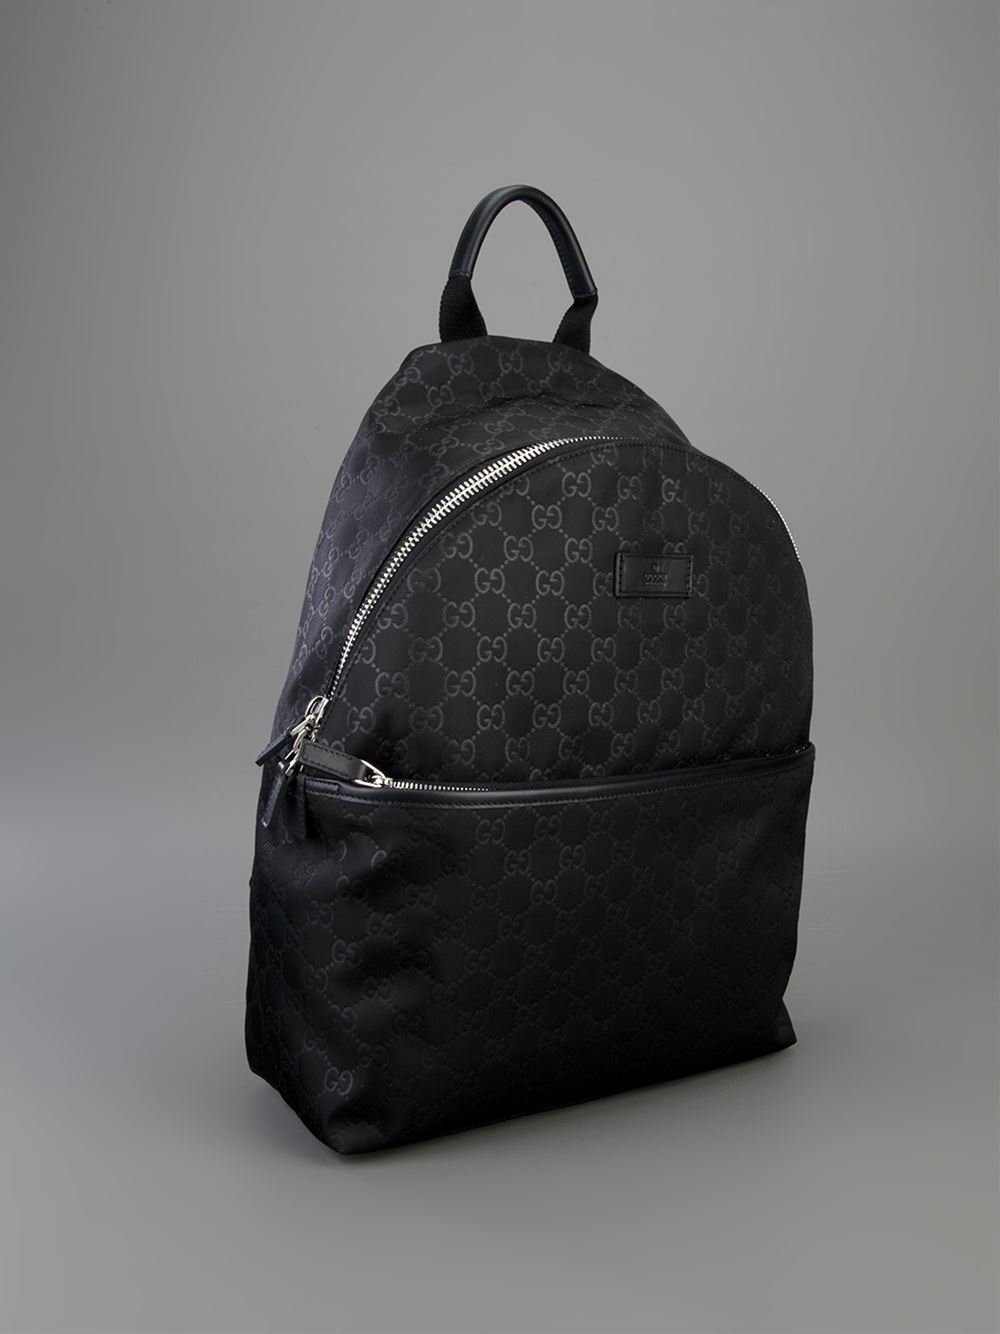 Gucci Embossed Monogram Backpack in Black - Lyst